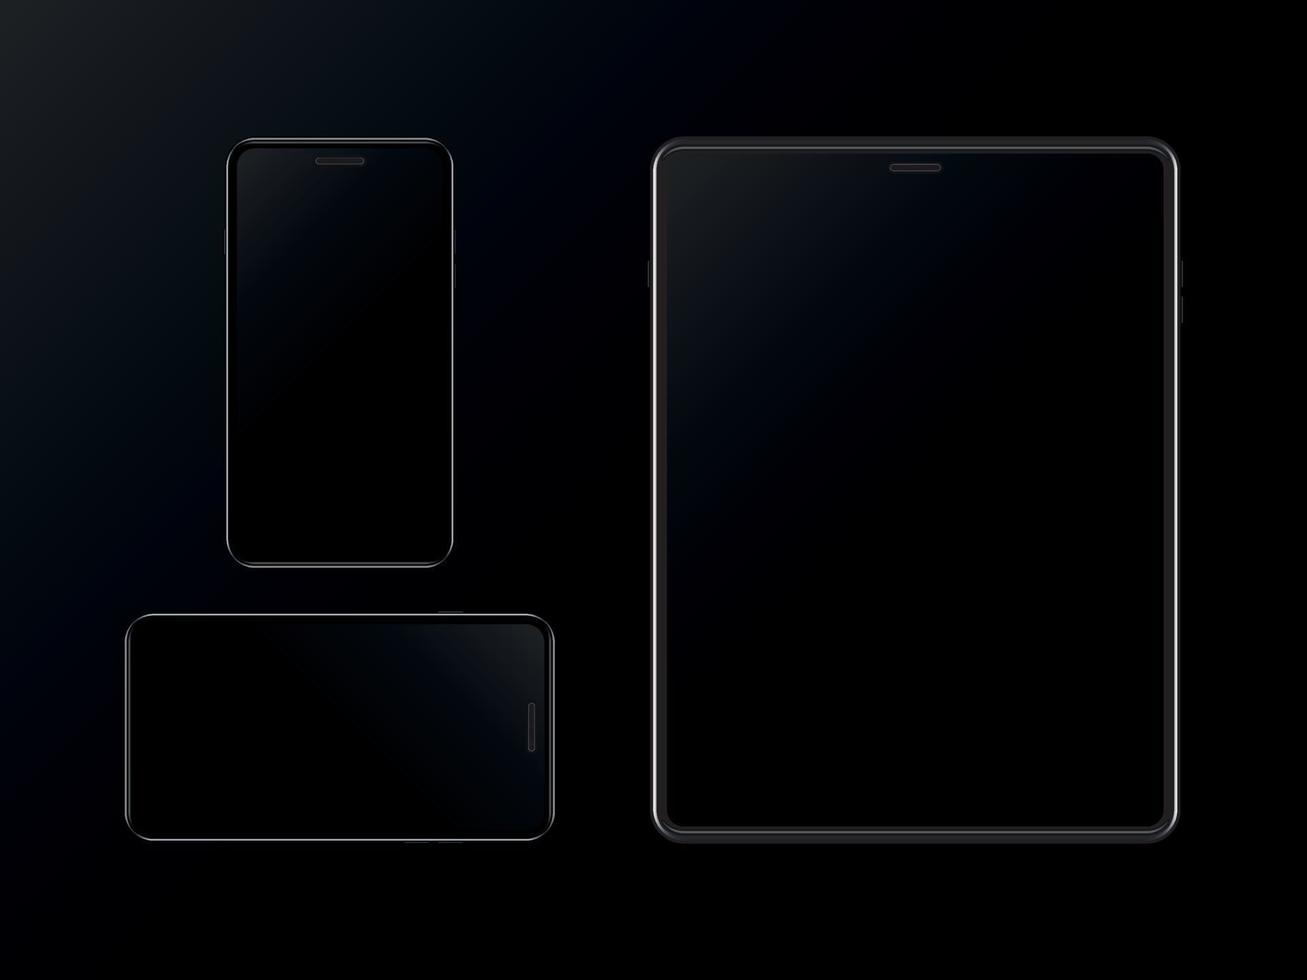 conjunto de teléfono inteligente y tableta negros sobre fondo negro. plantilla de diseño moderno de gadgets. maqueta de teléfono móvil y tableta. vector